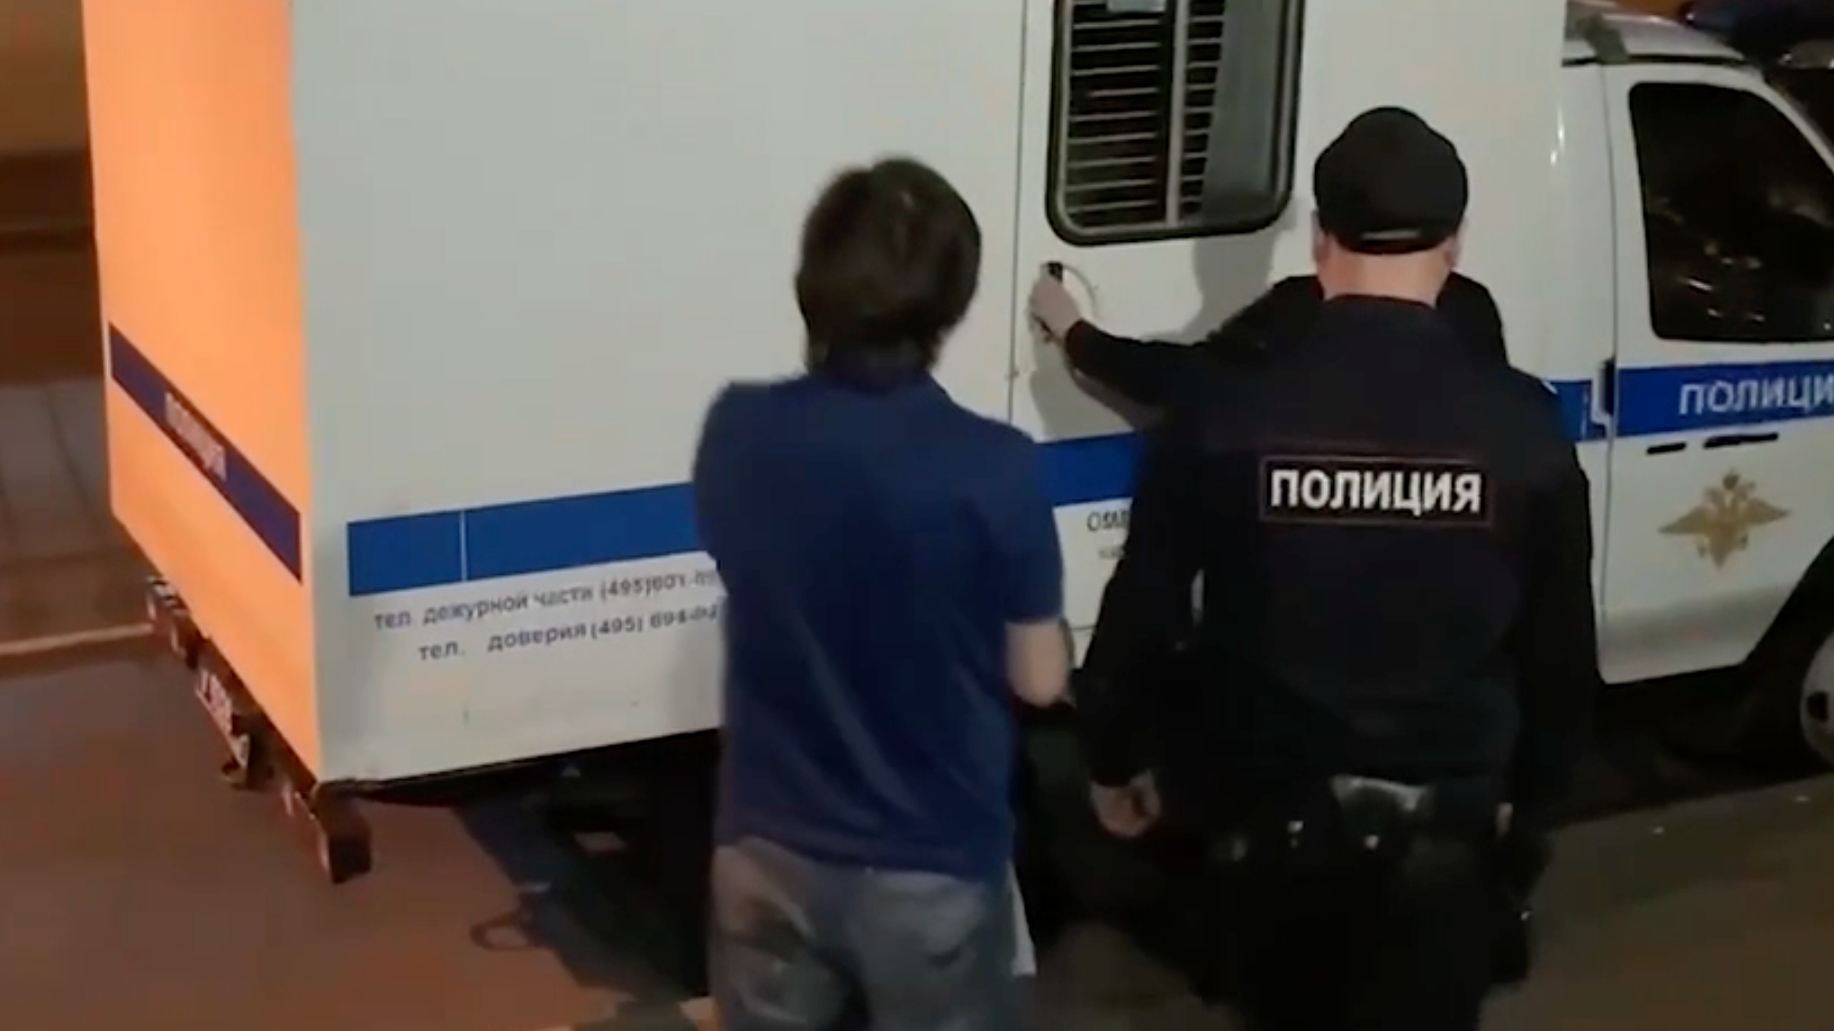 ФСБ заявила о задержании частных сыщиков за сбор информации о силовиках